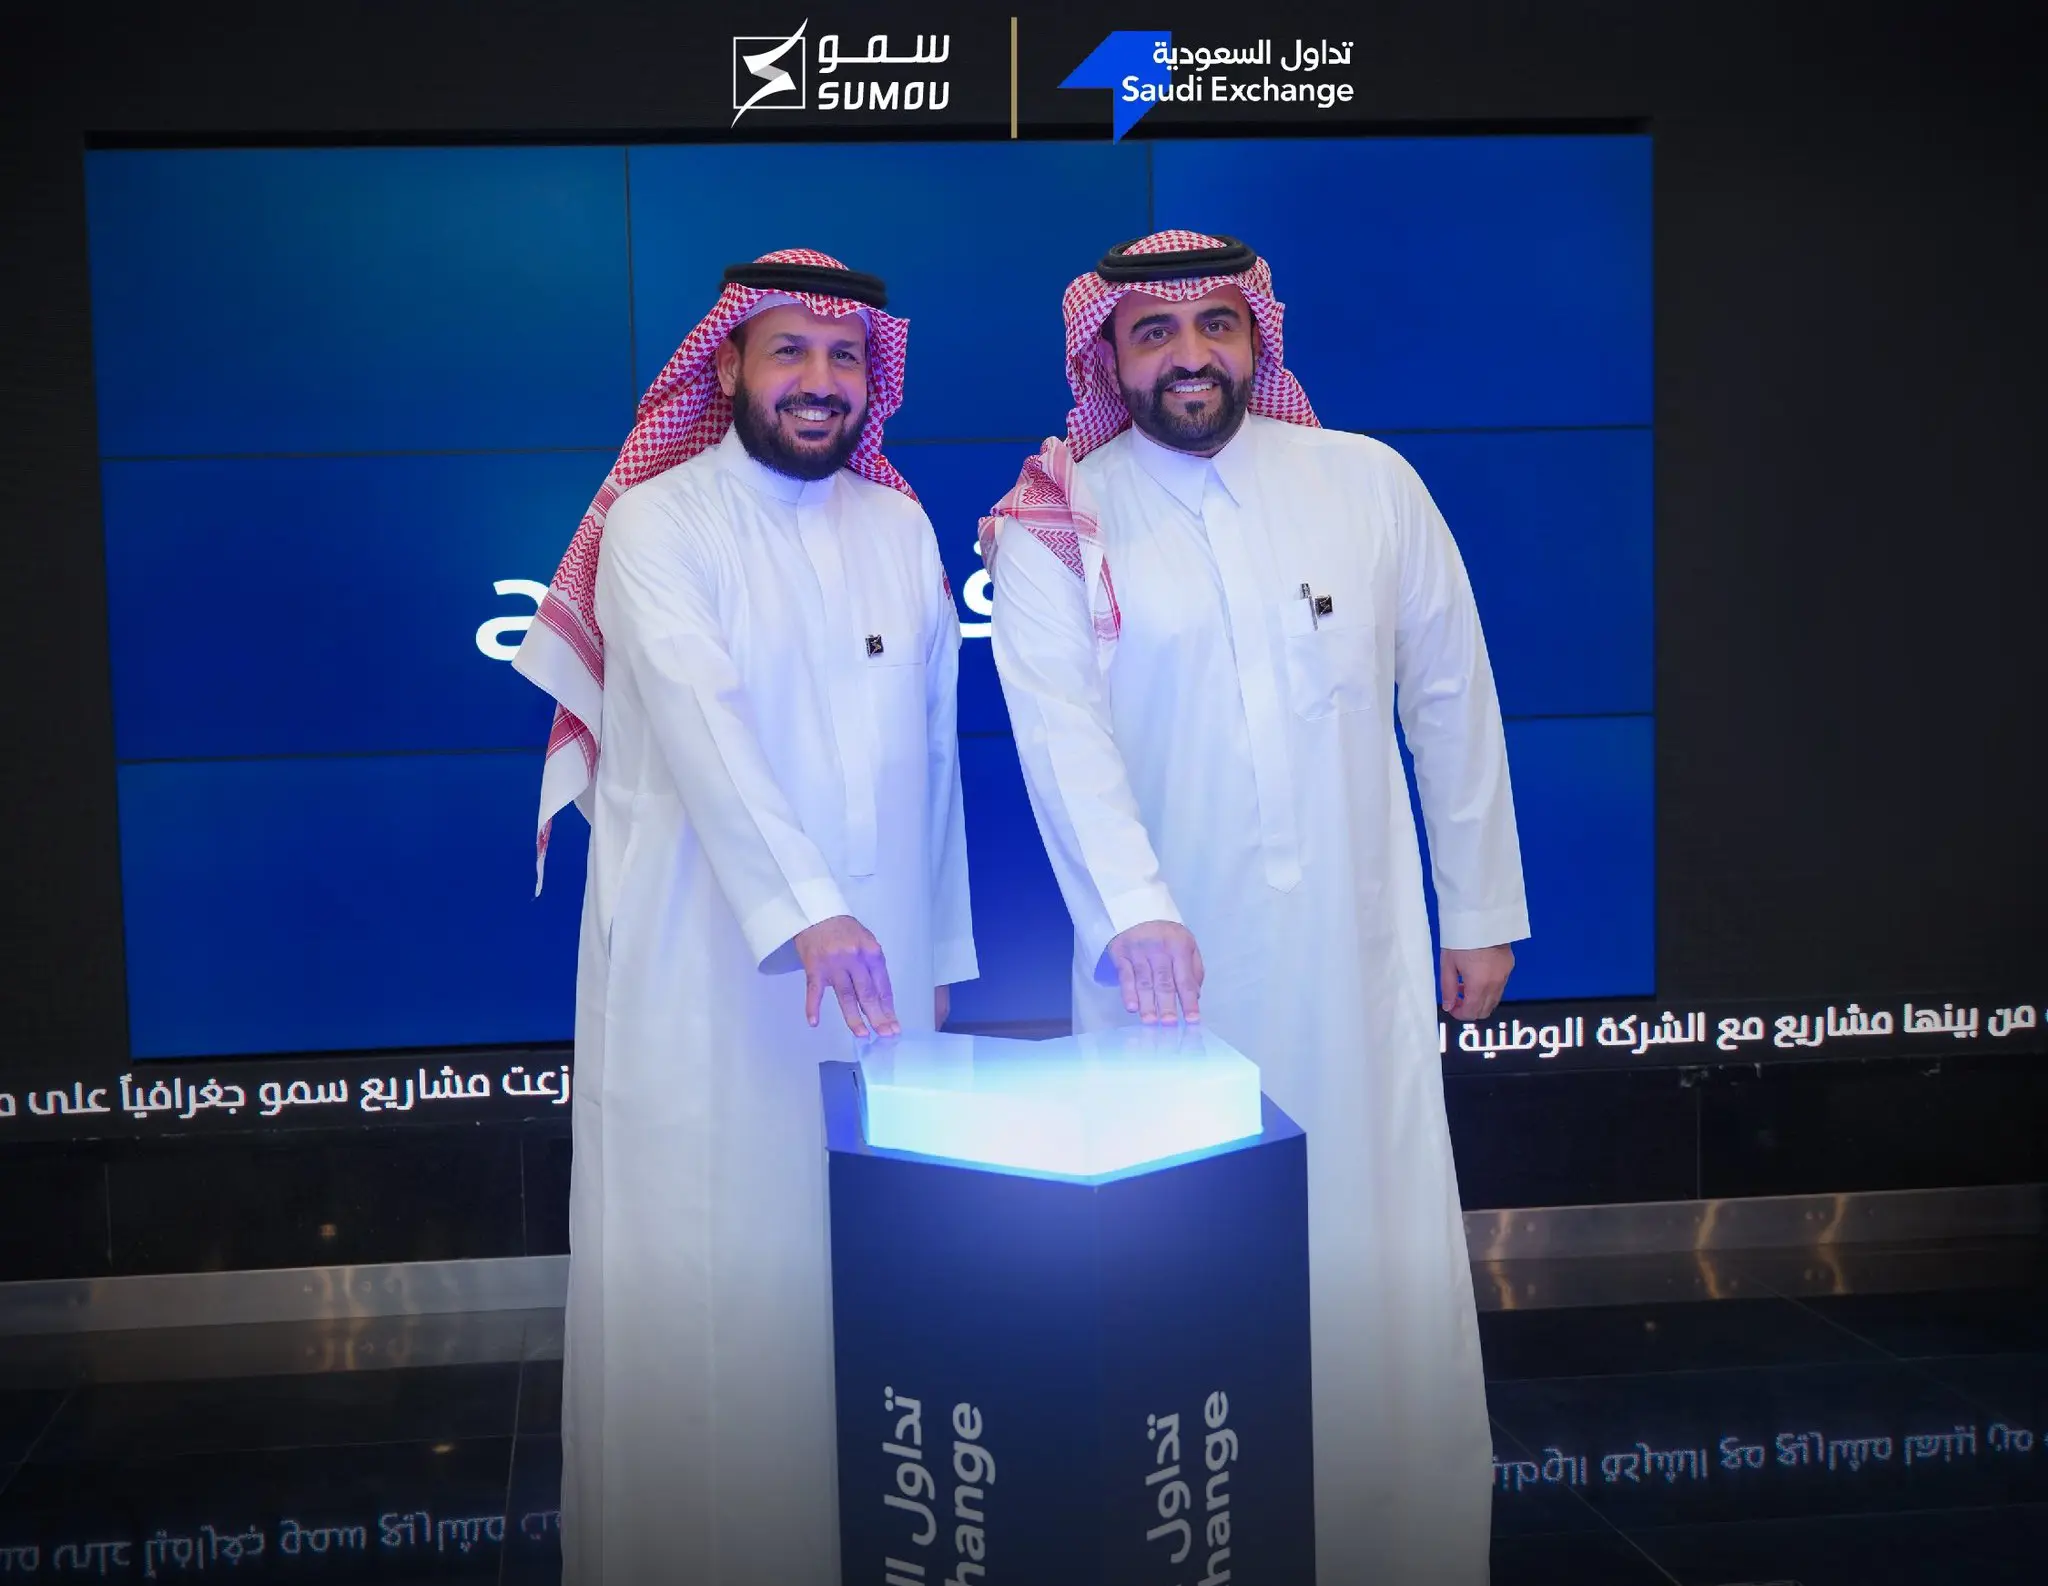 "سمو العقارية" السعودية توقع عقد تطوير مع "جبين" بـ 346.6 مليون دولار